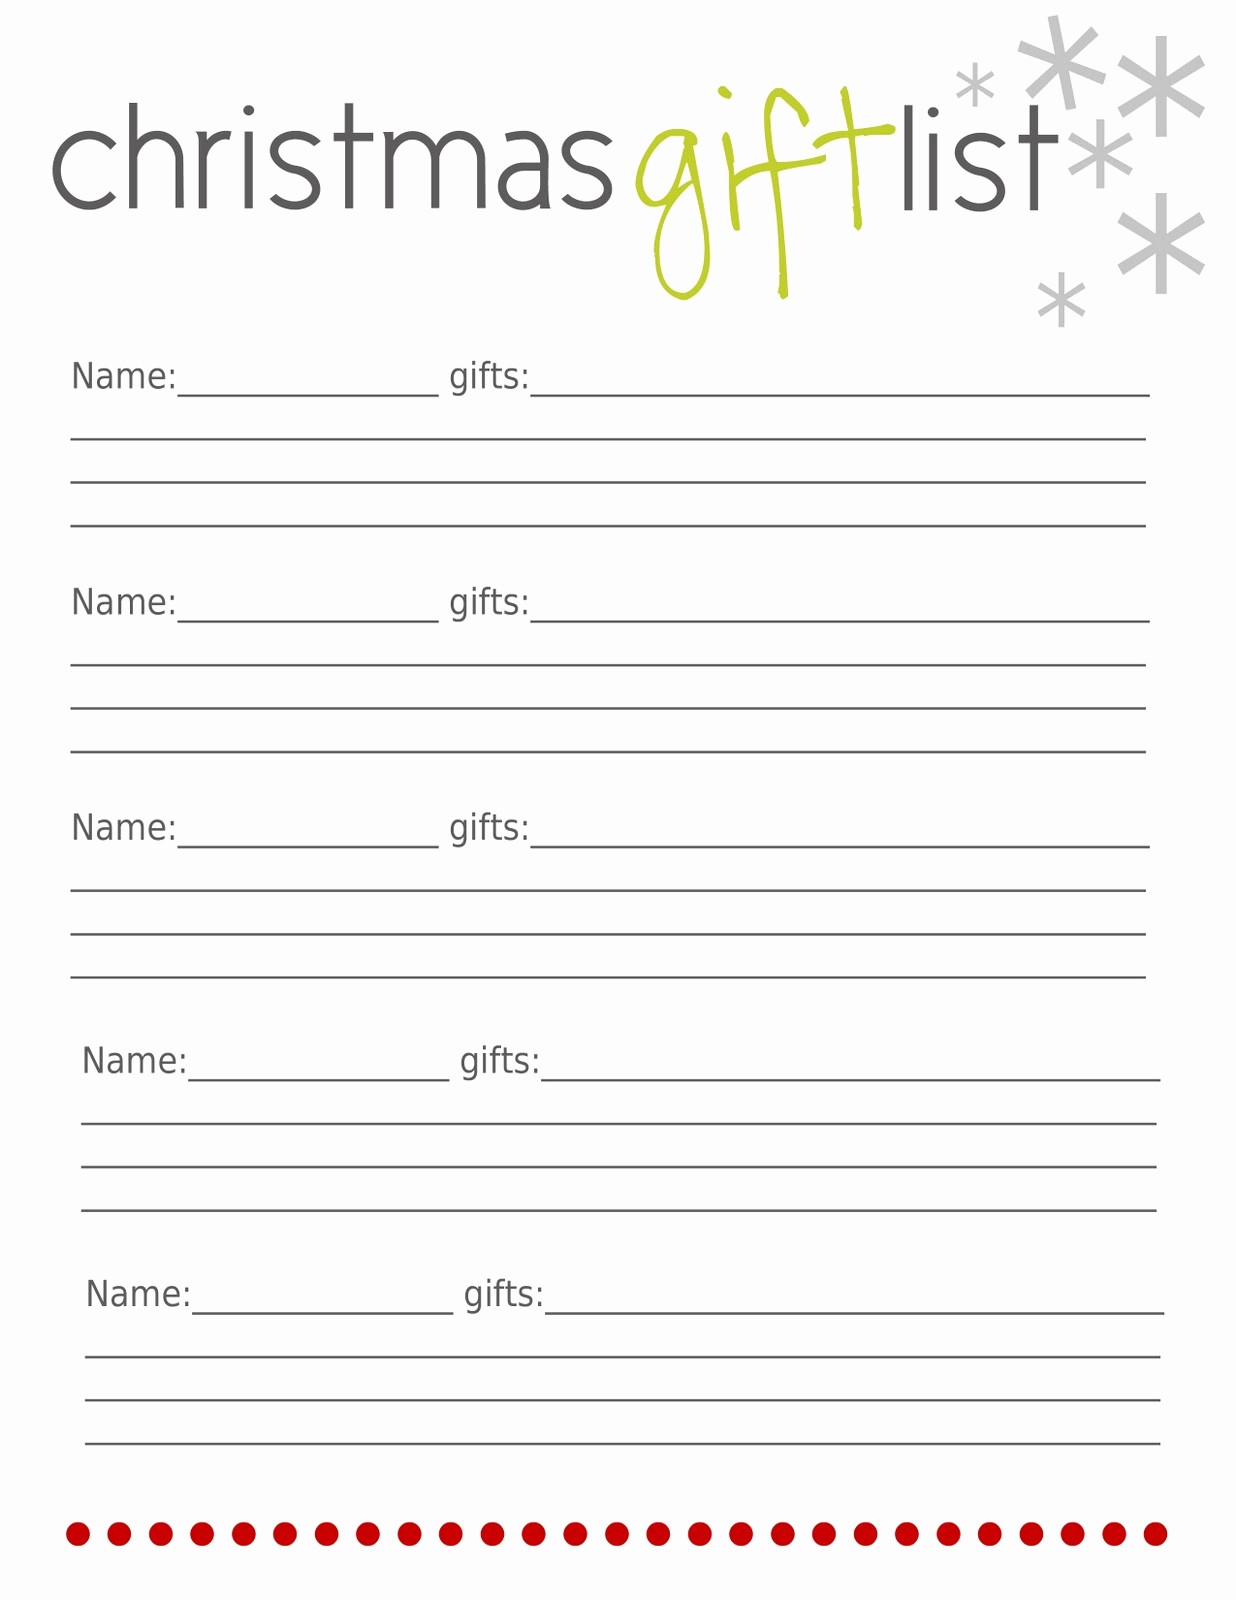 Christmas Shopping List Template Printable Awesome Christmas List Template